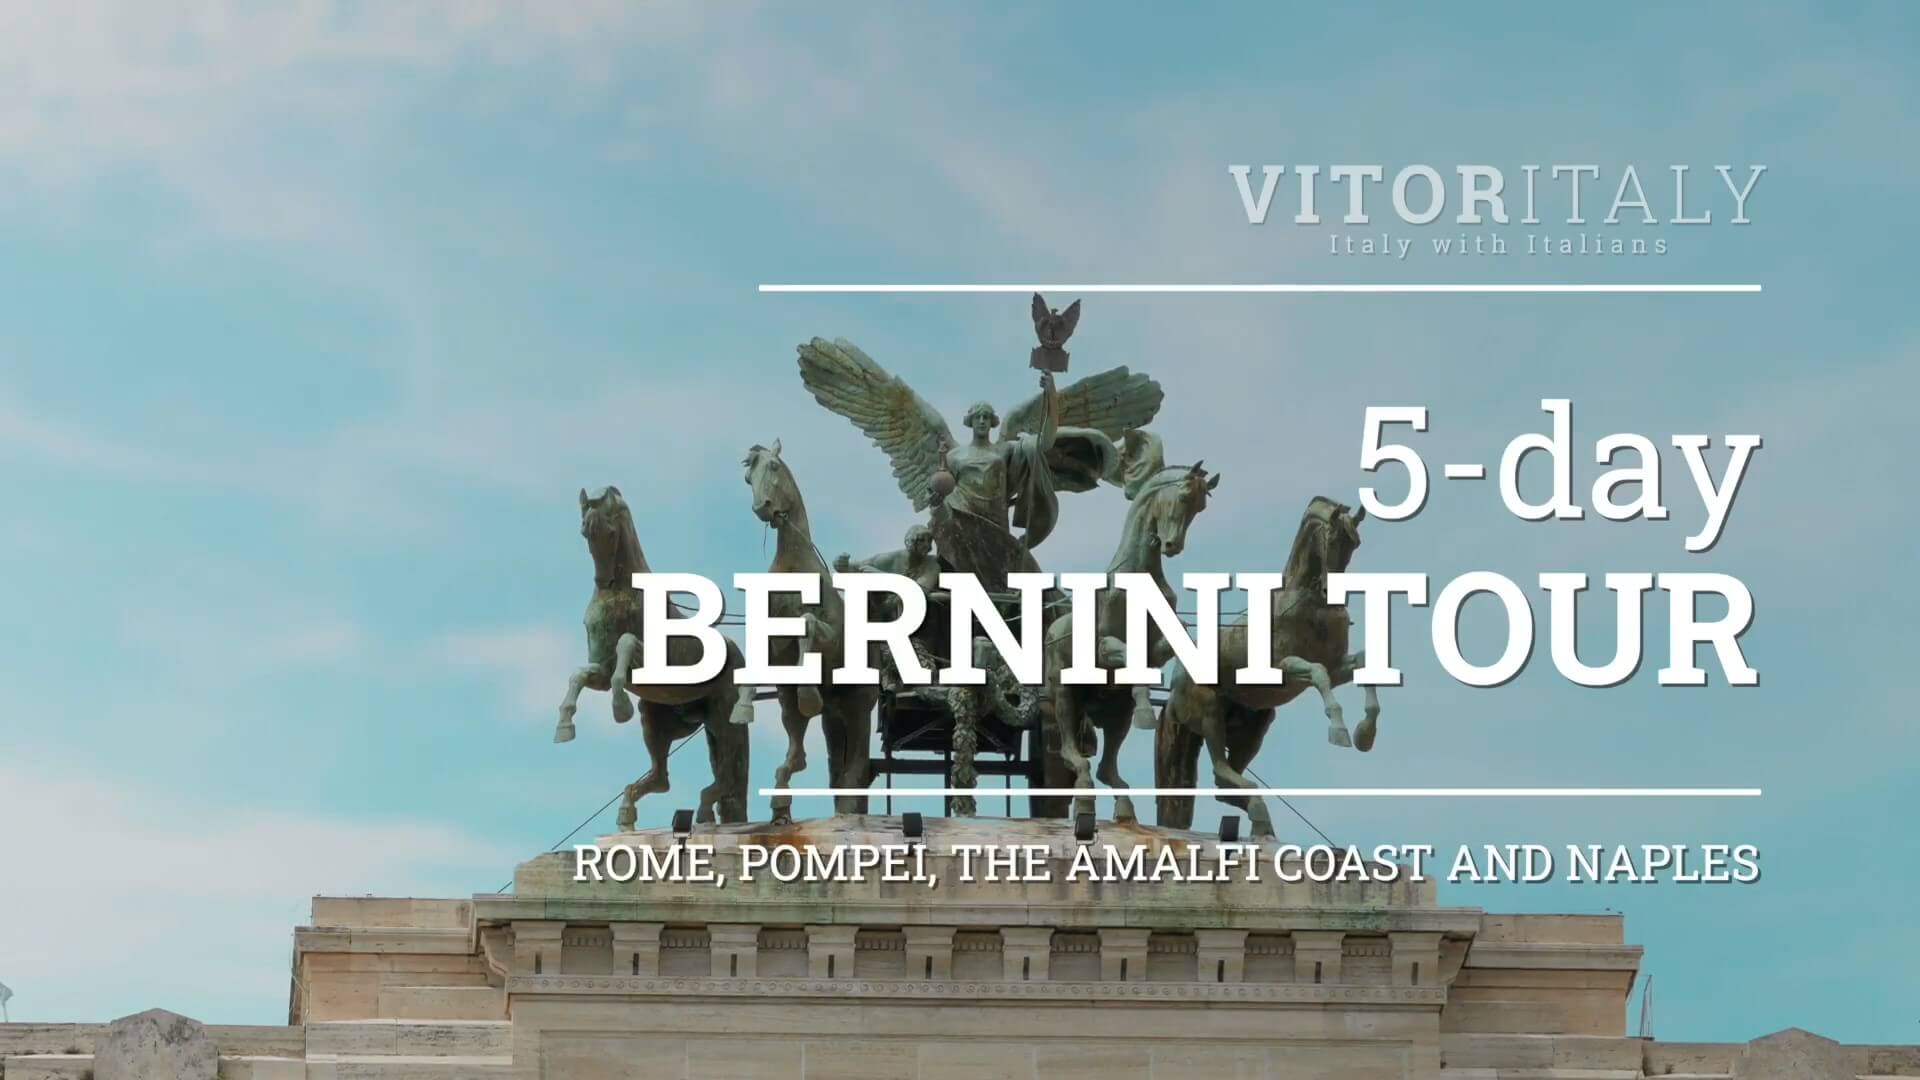 BERNINI TOUR - Rome, Pompei, the Amalfi Coast and Naples in 5 days